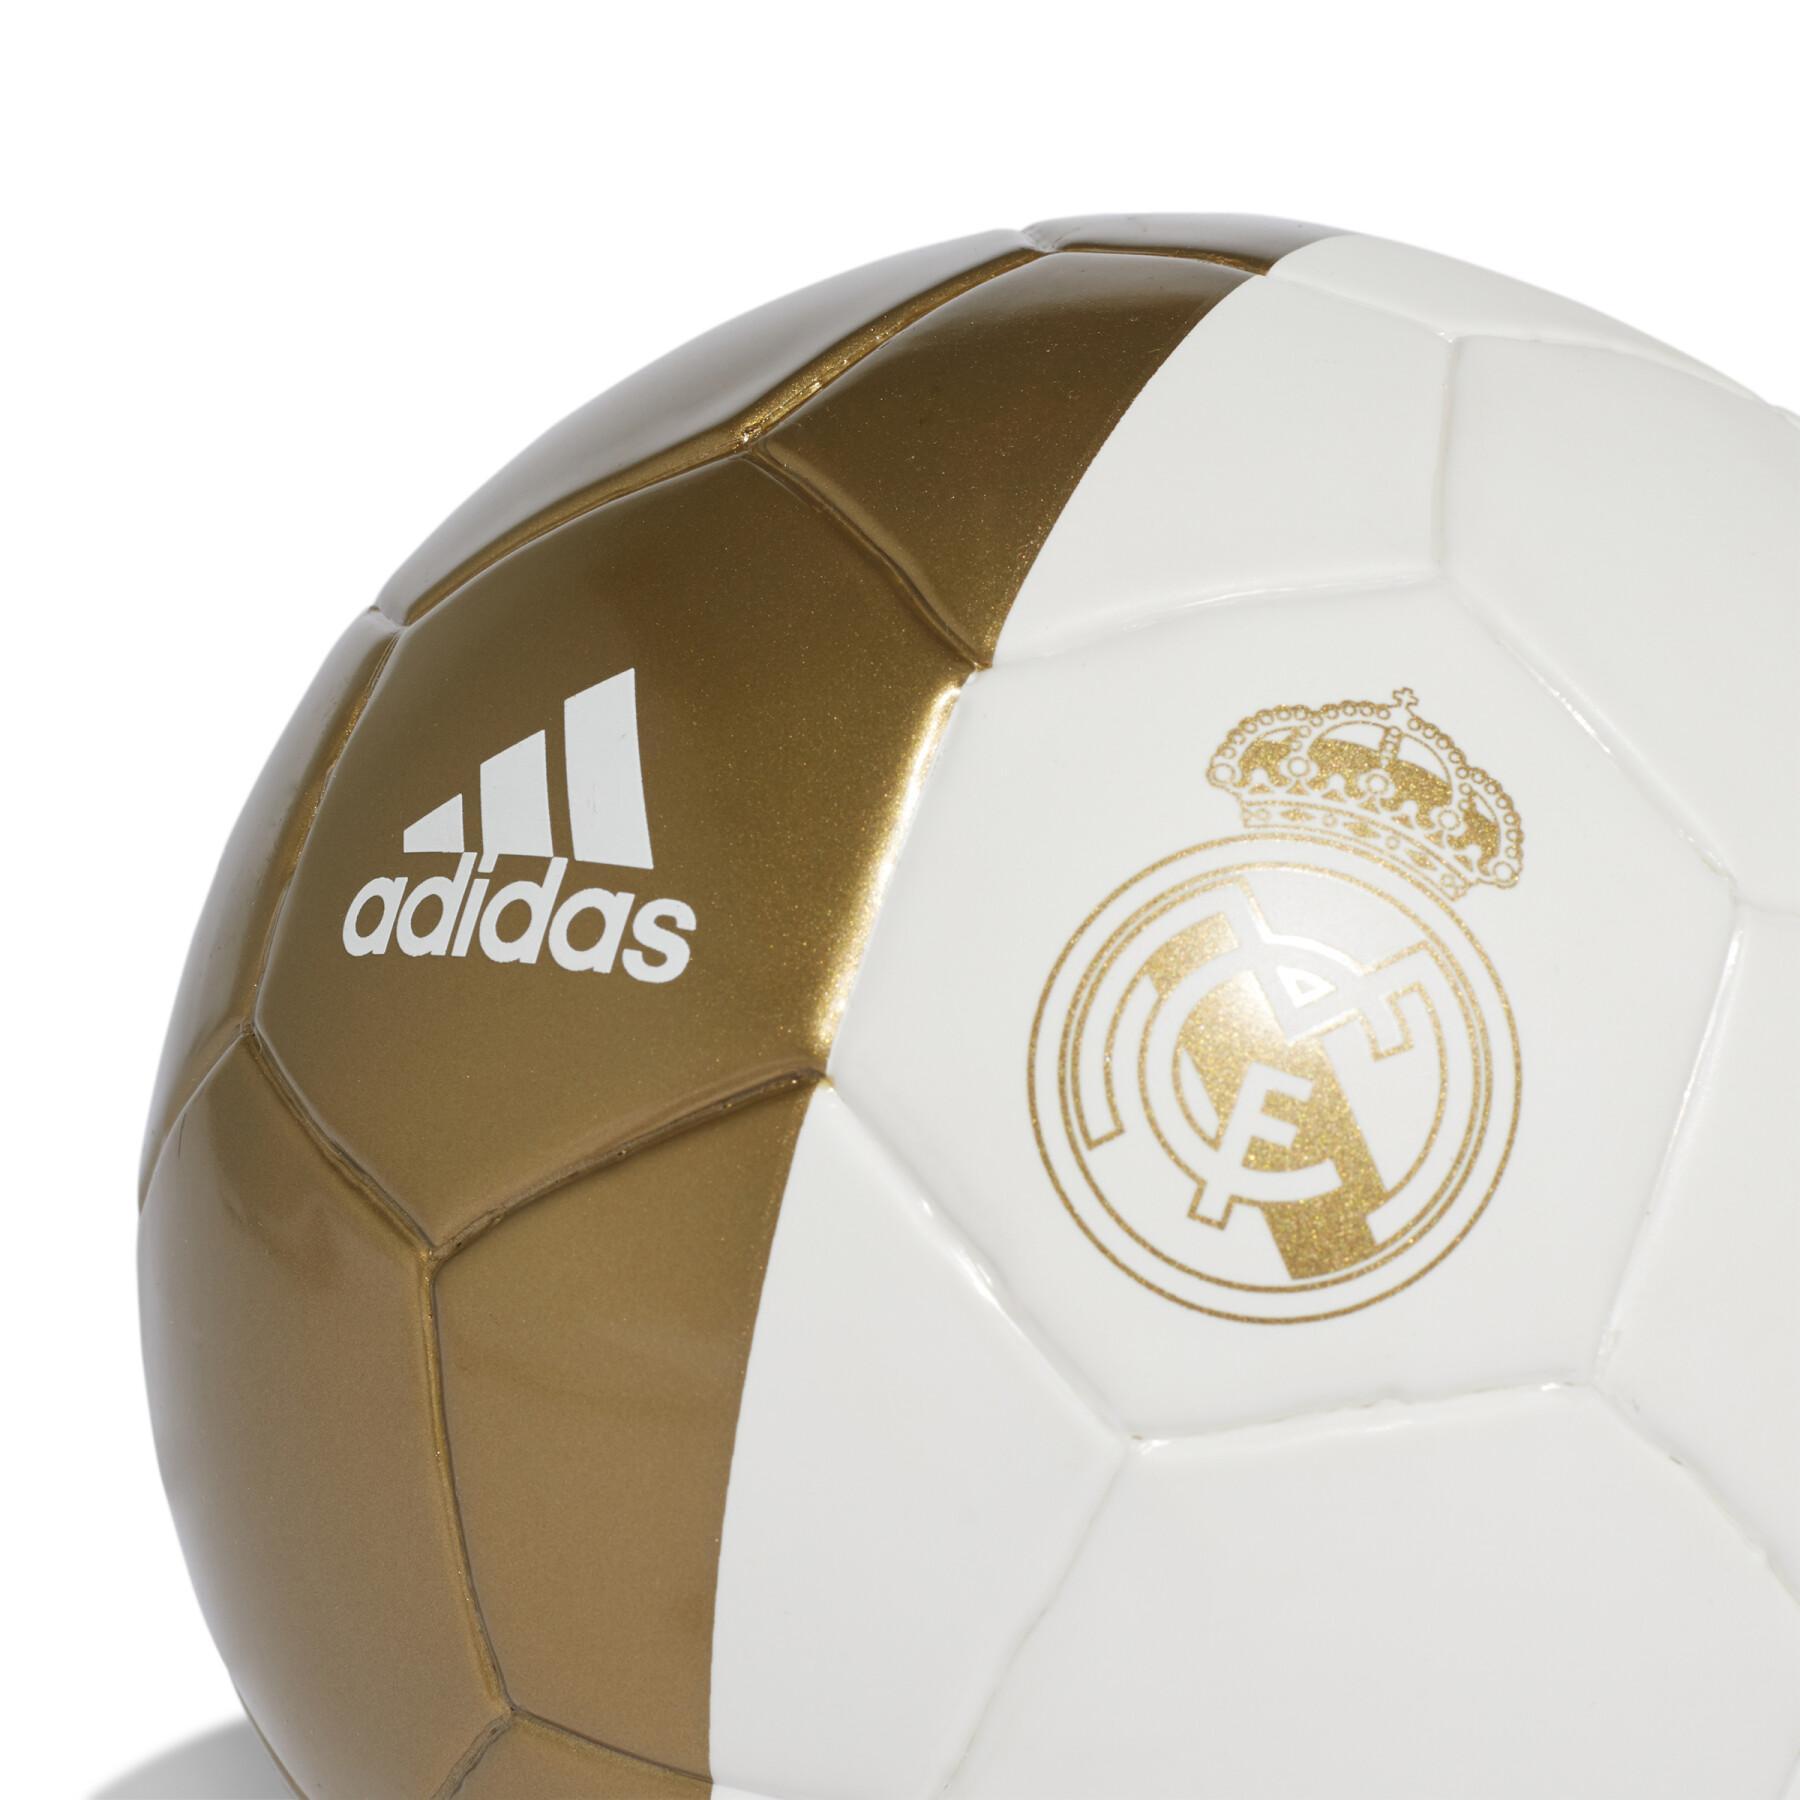 Mini piłka Real Madrid